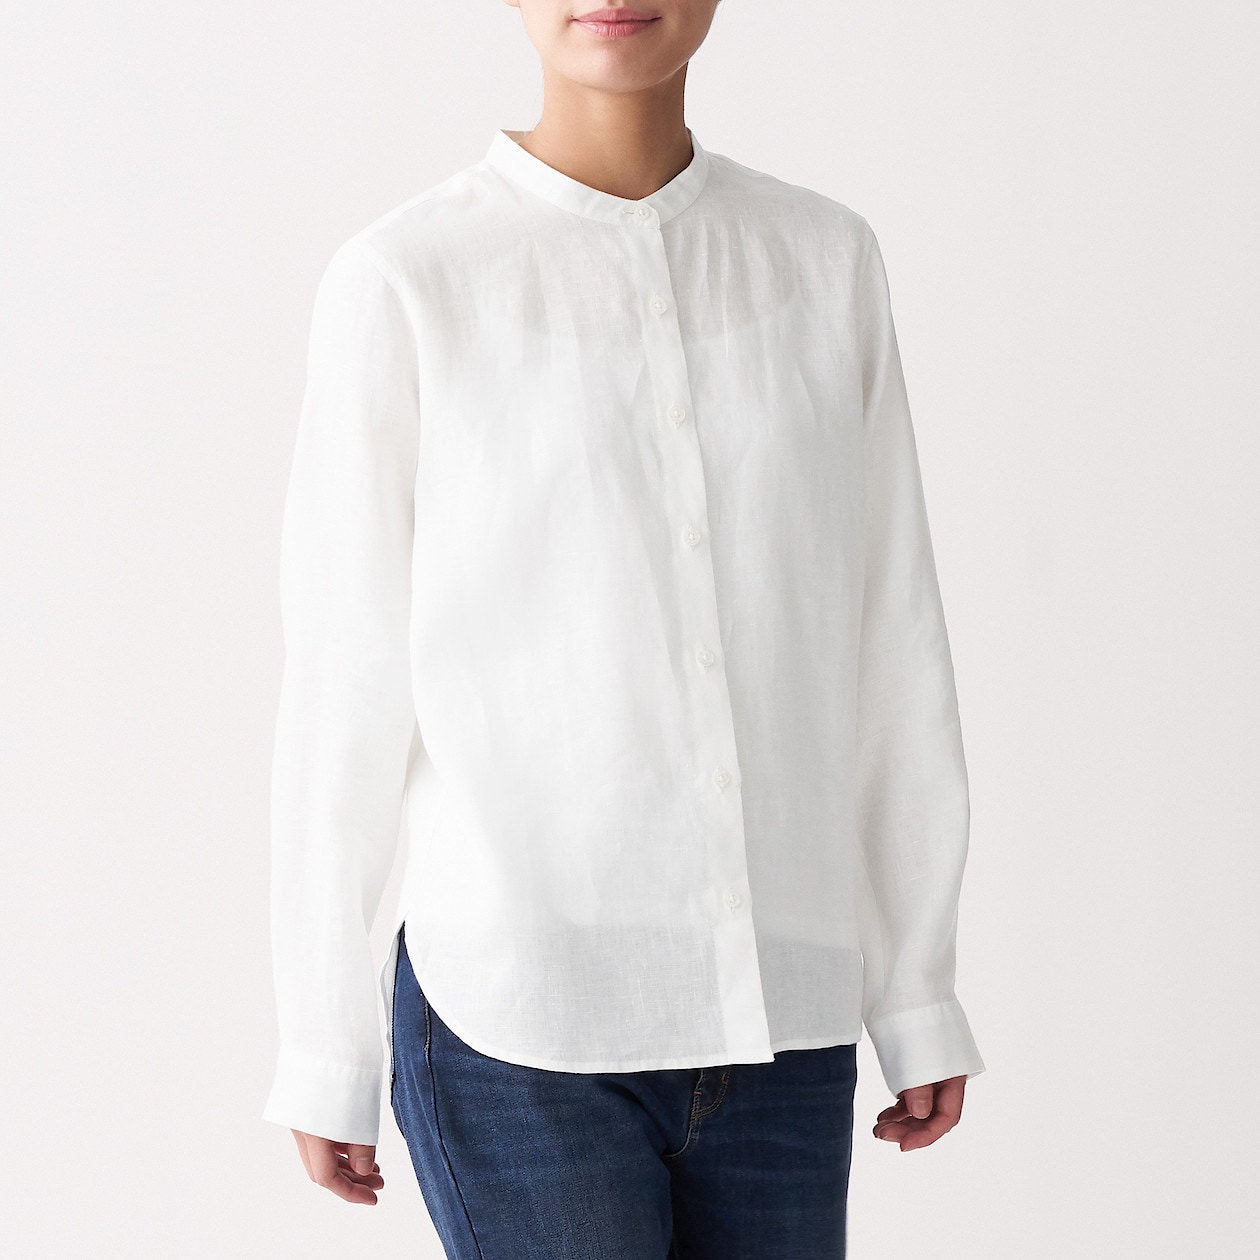 オーガニックリネン洗いざらしスタンドカラーシャツ 婦人ｓ 白 シャツ ブラウス 長袖 七分袖 婦人 レディース 通販 無印良品